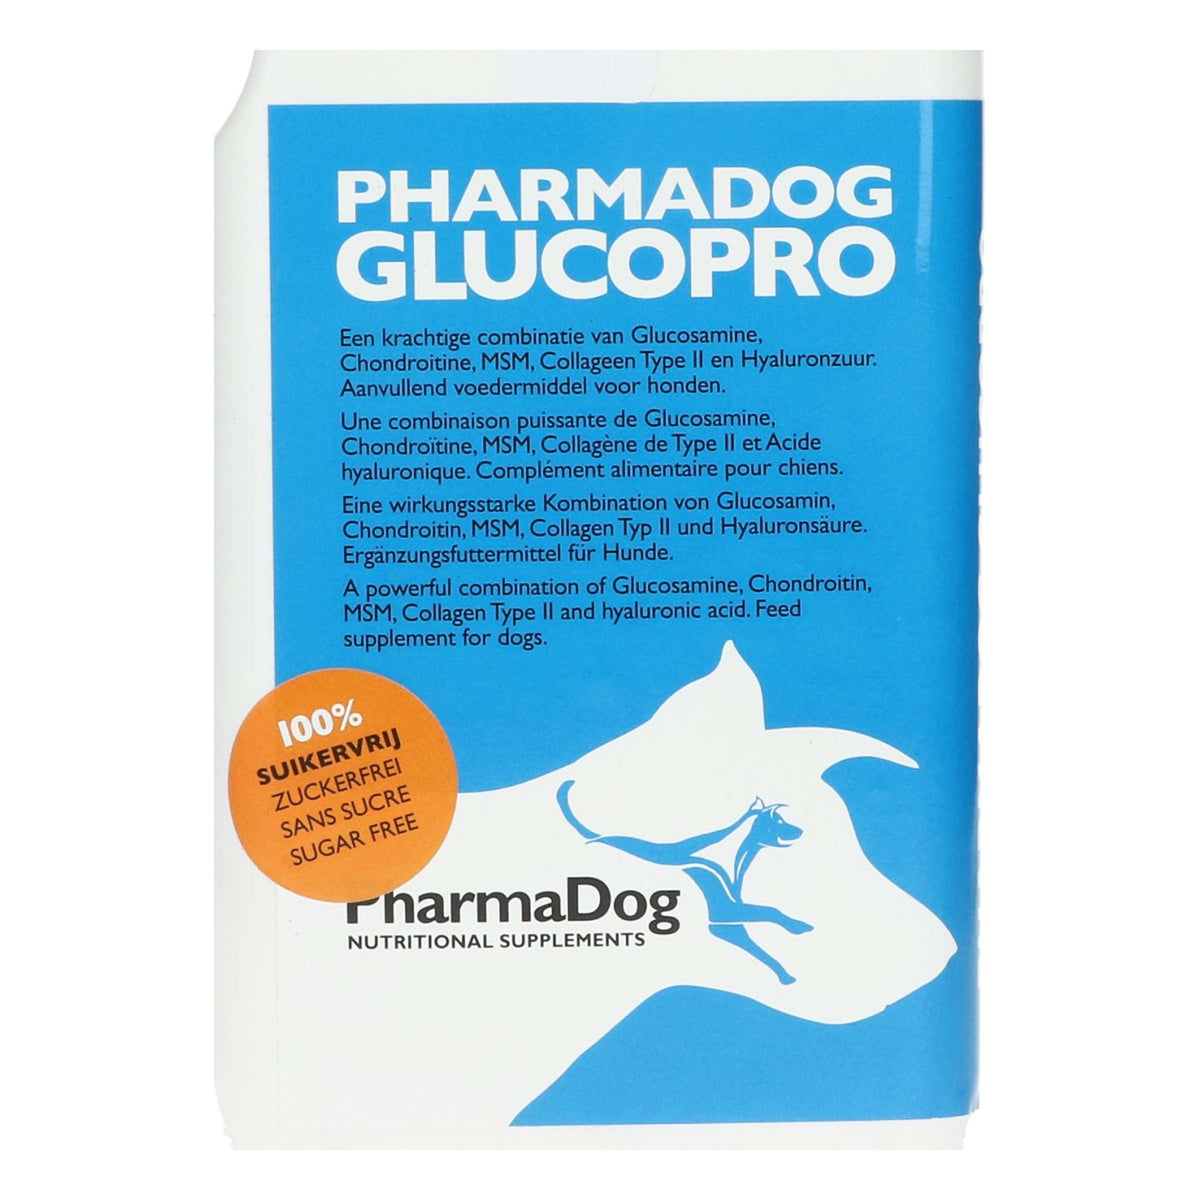 PharmaDog GlucoPro